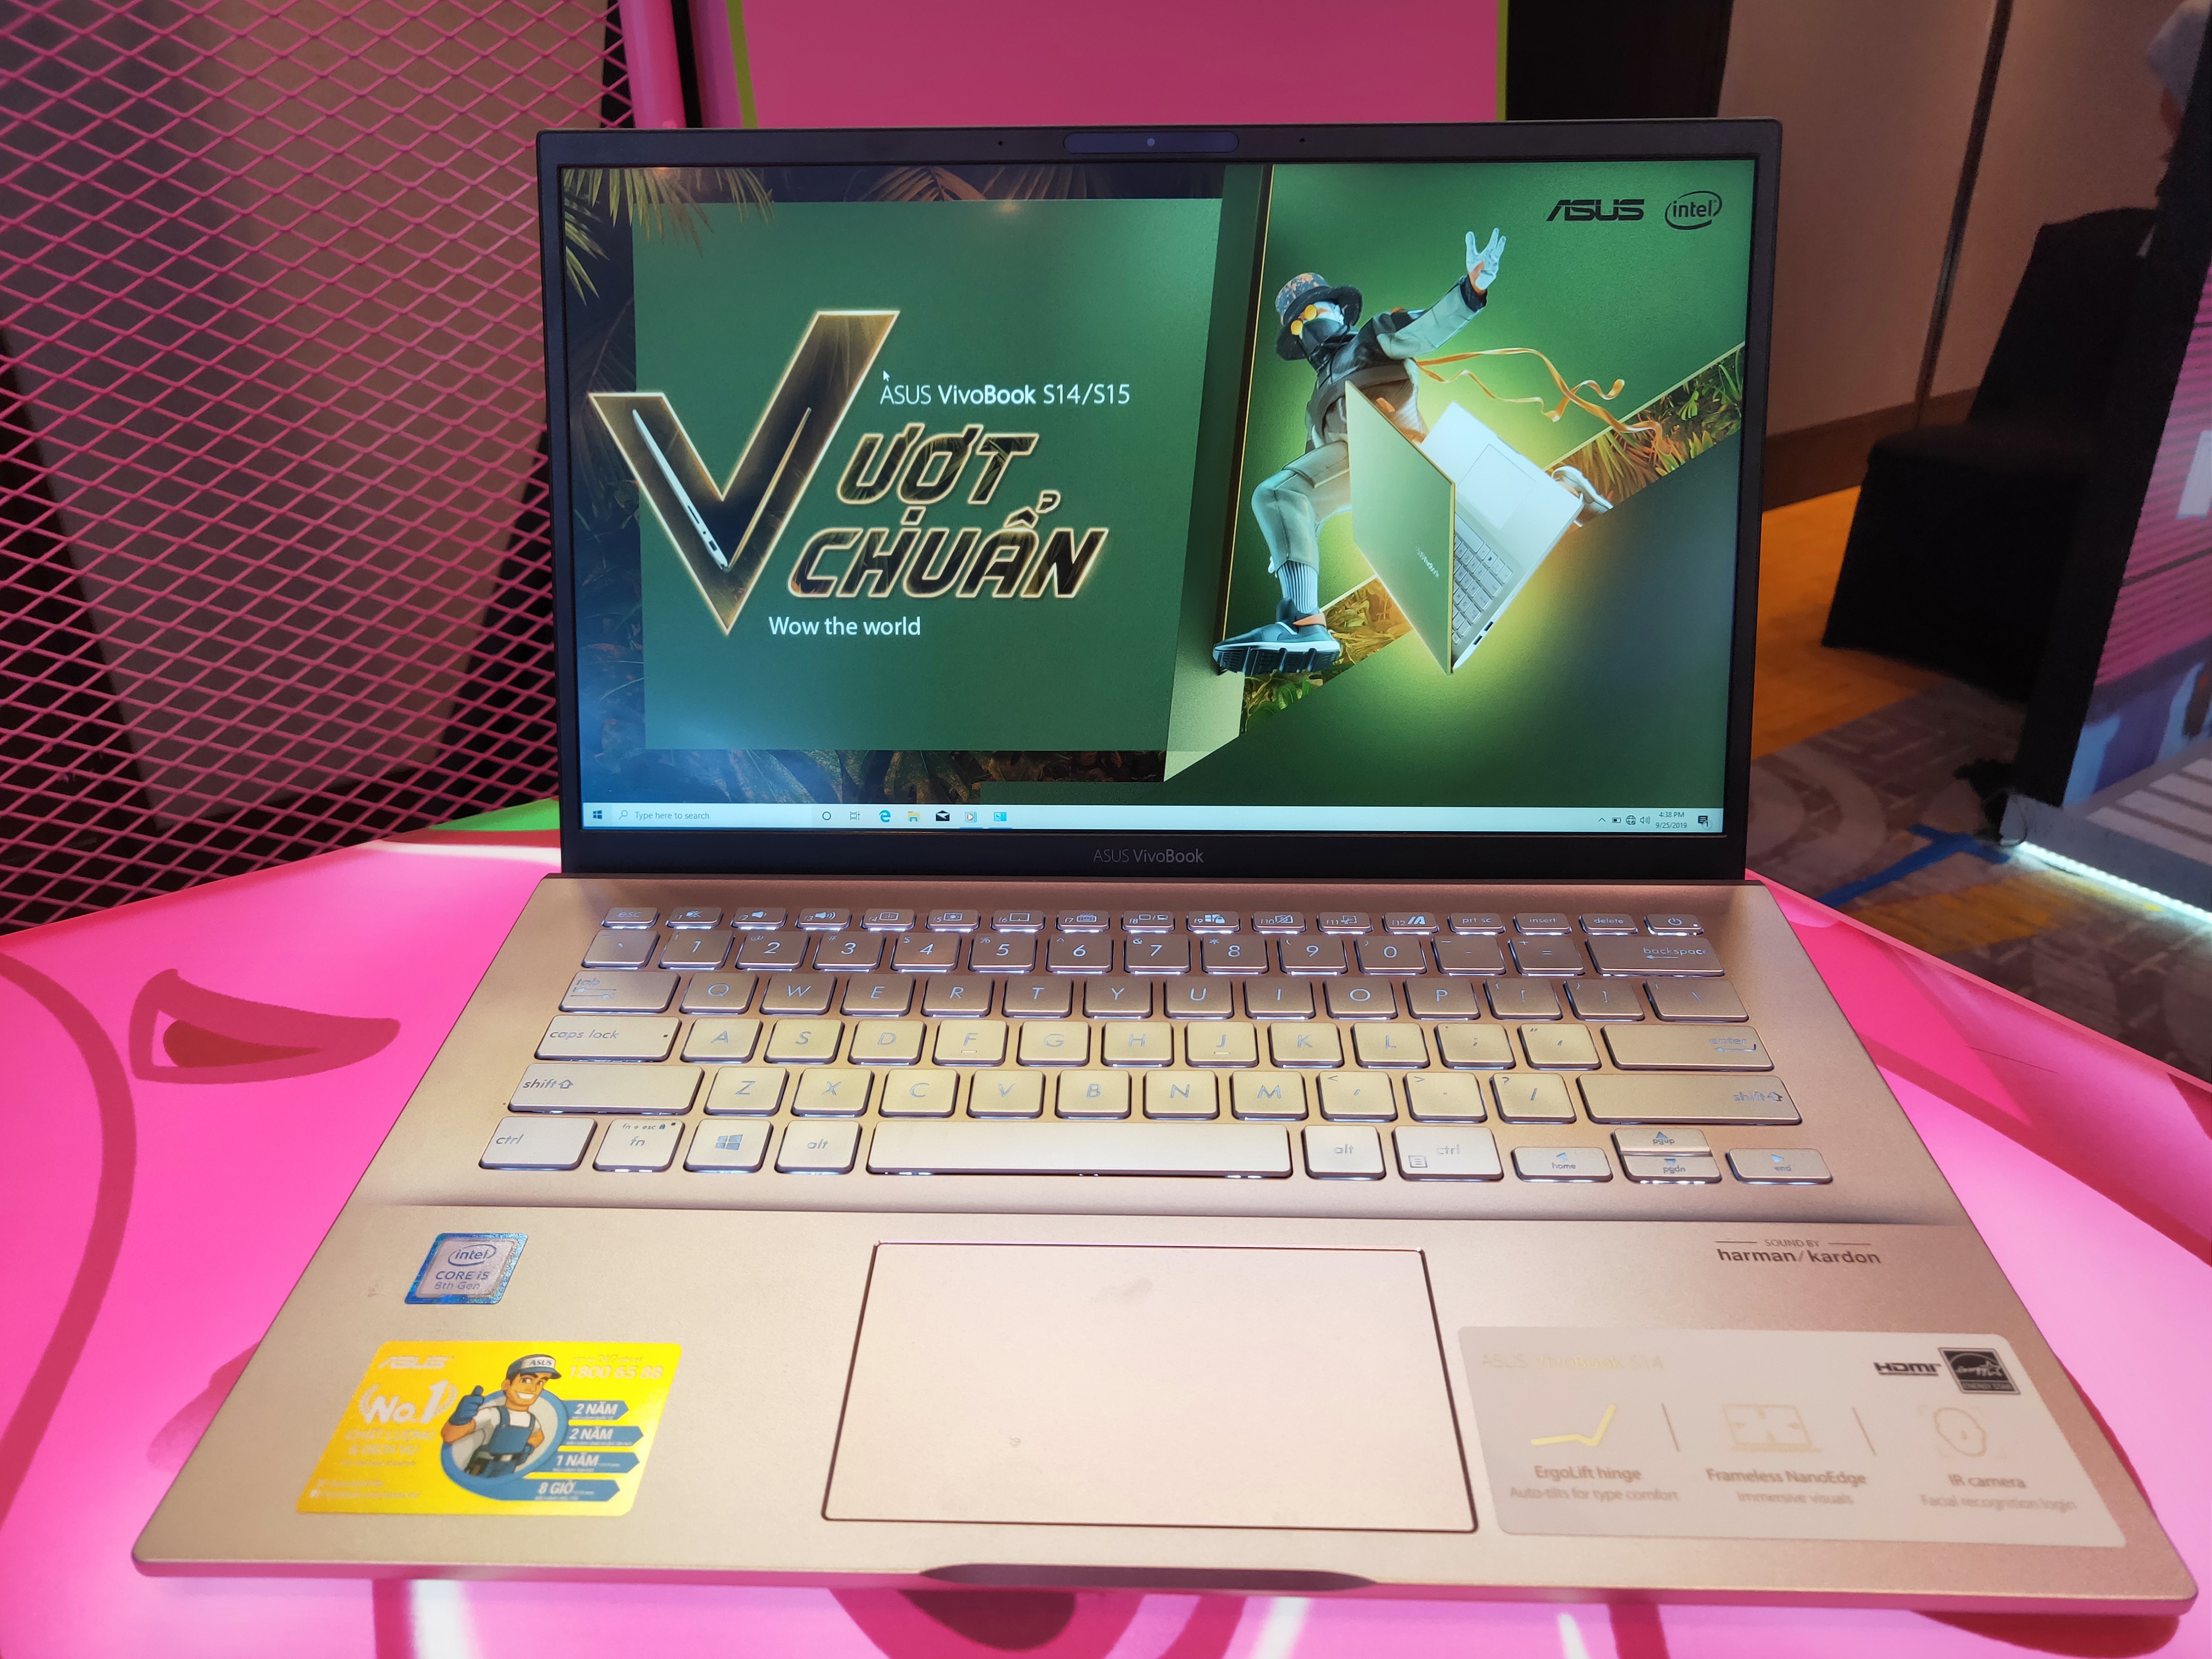 ASUS ra mắt VivoBook S14/S15 lần đầu tích hợp Intel Optane H10, giá từ 19 triệu đồng